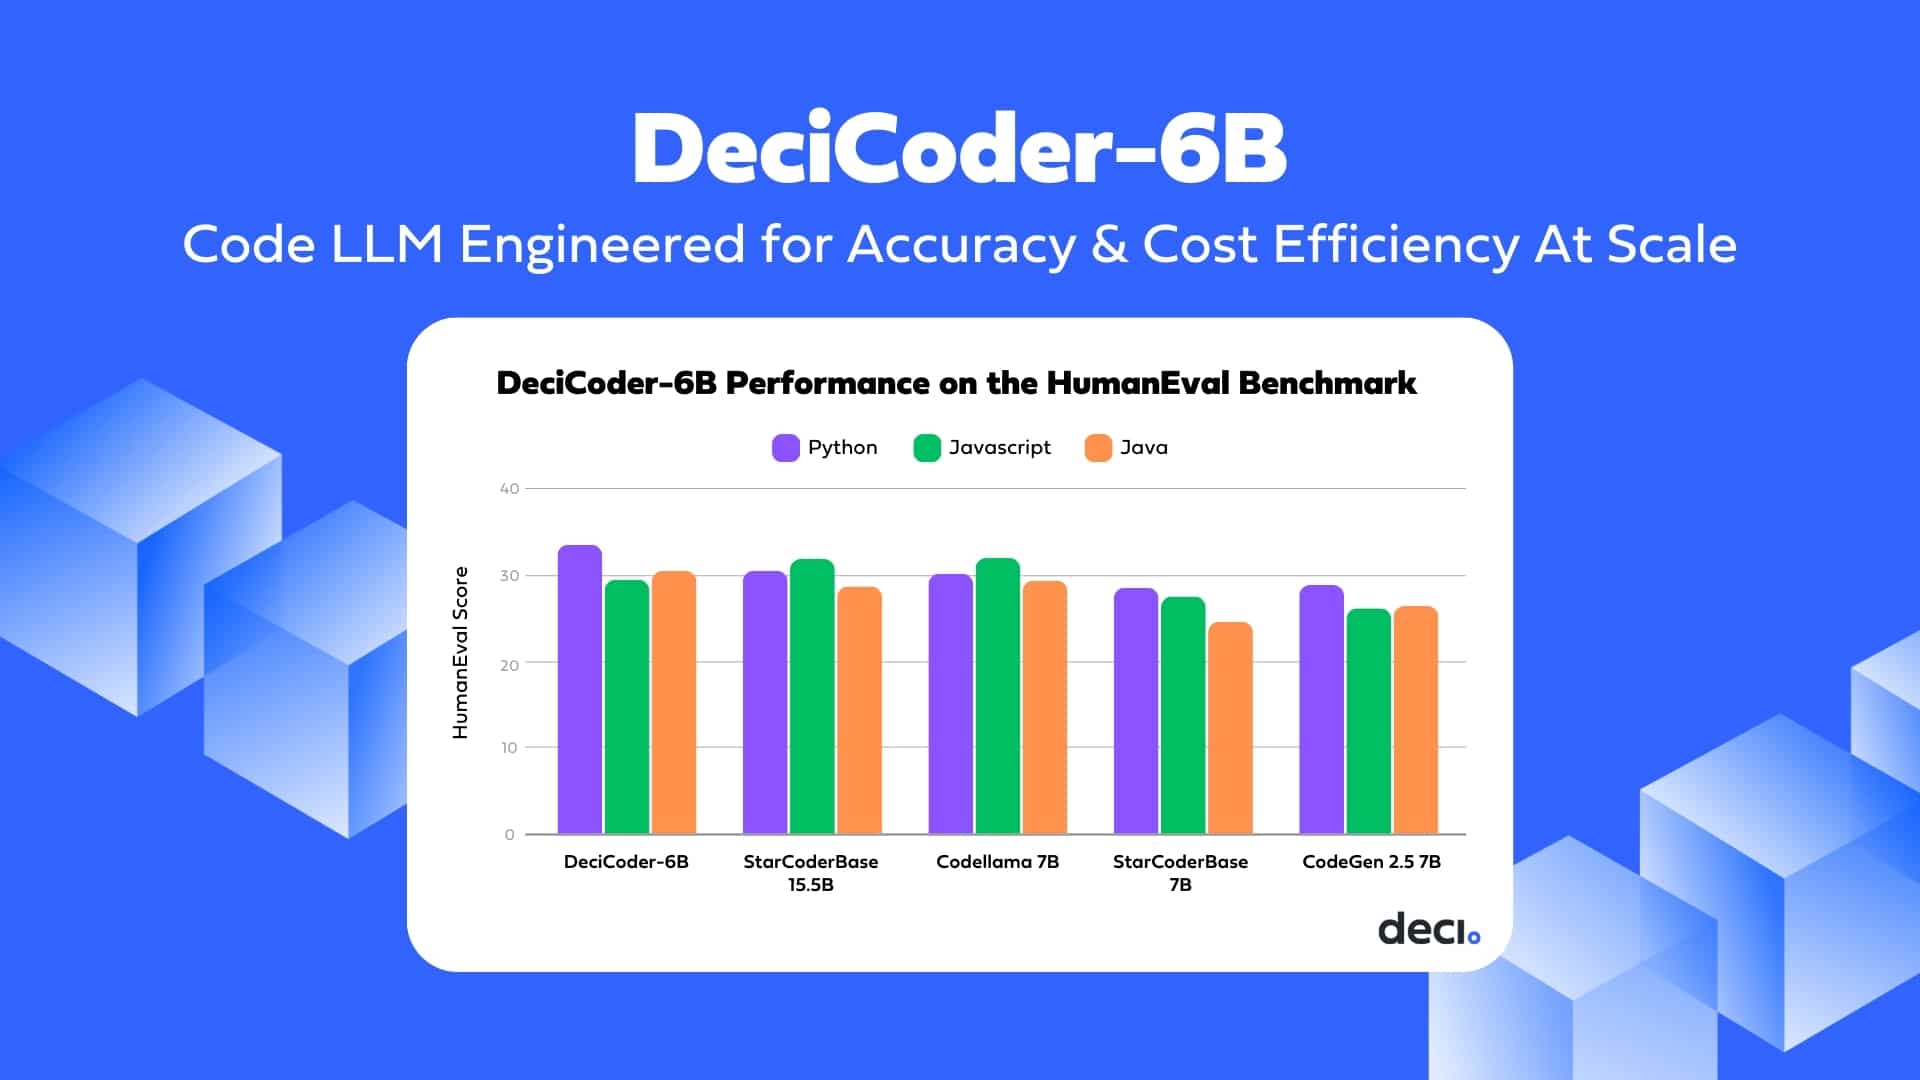 decicoder-6b-qualcomm-blog-featured-5